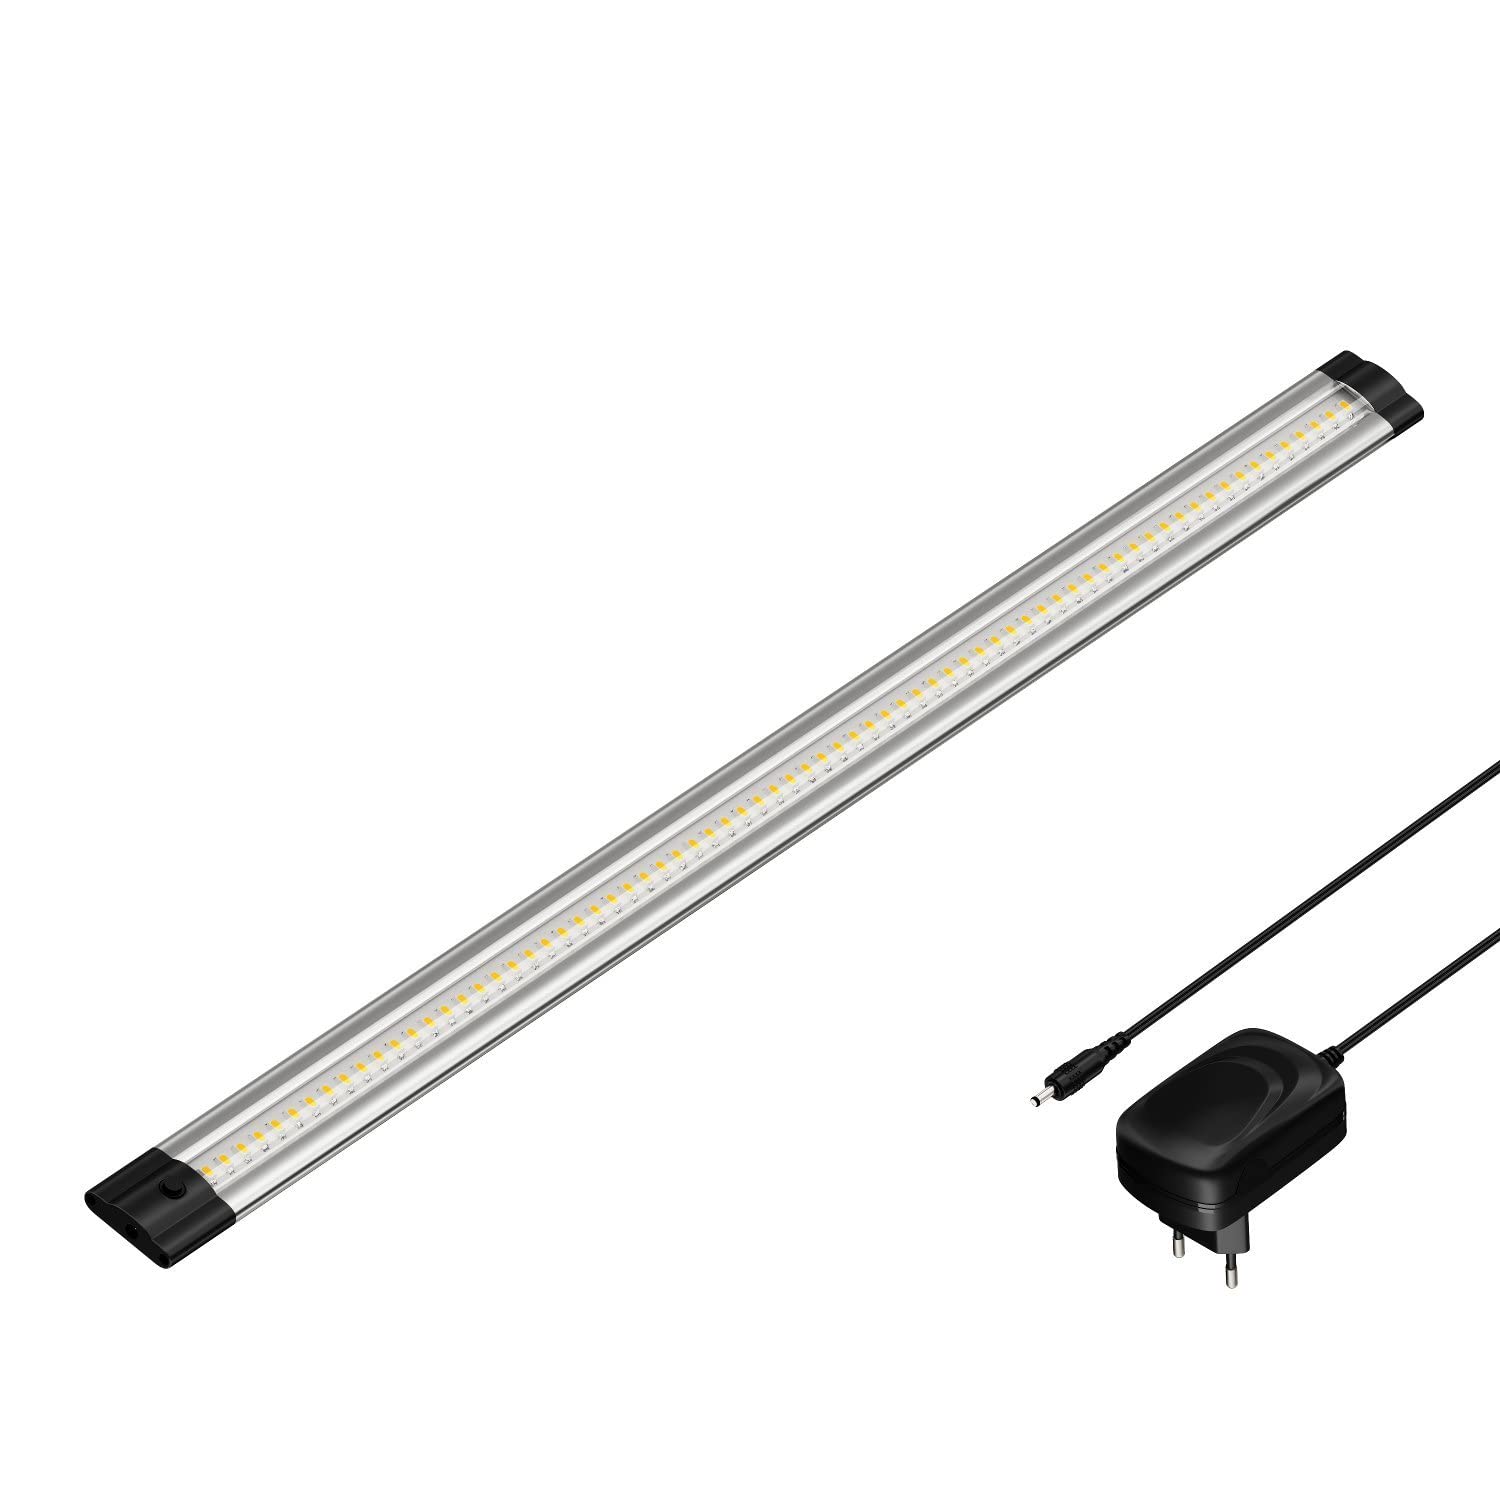 parlat LED Unterbau-Leuchte SIRIS mit Netzteil, flach, 50cm, 655lm, weiß